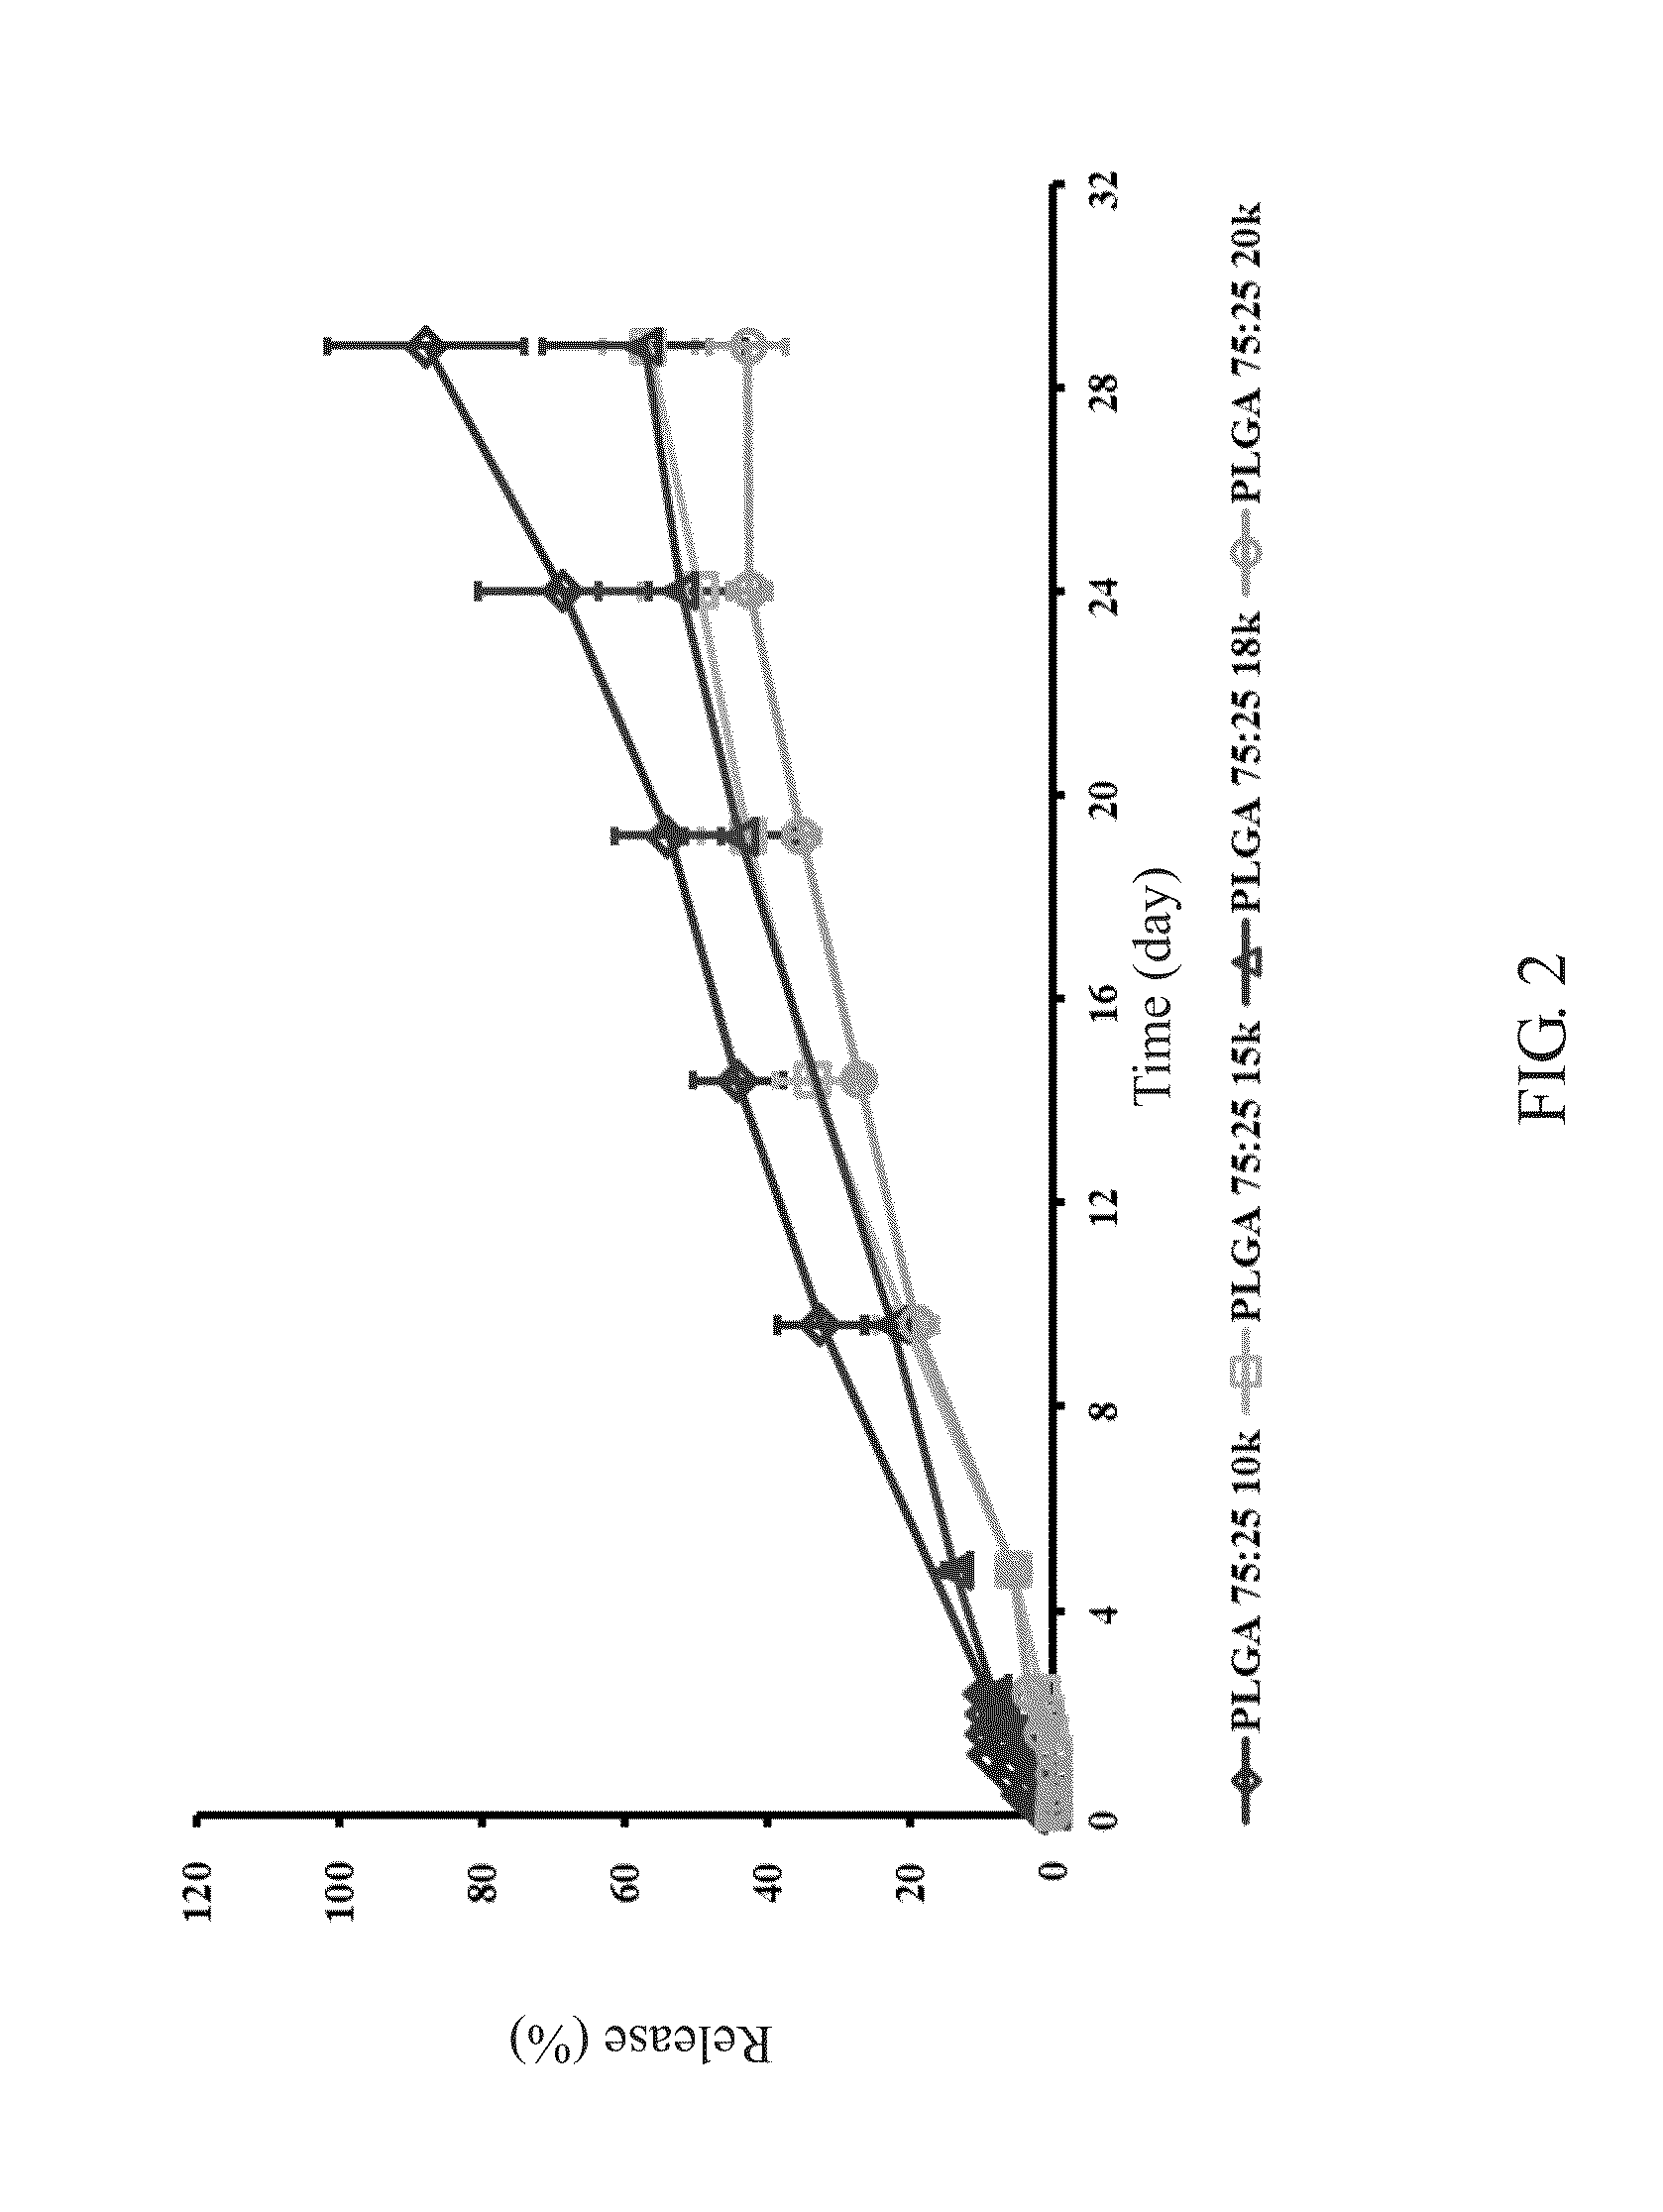 Analegisic (Sebacoyl dinalbuphine ester) PLGA controlled release formulation form